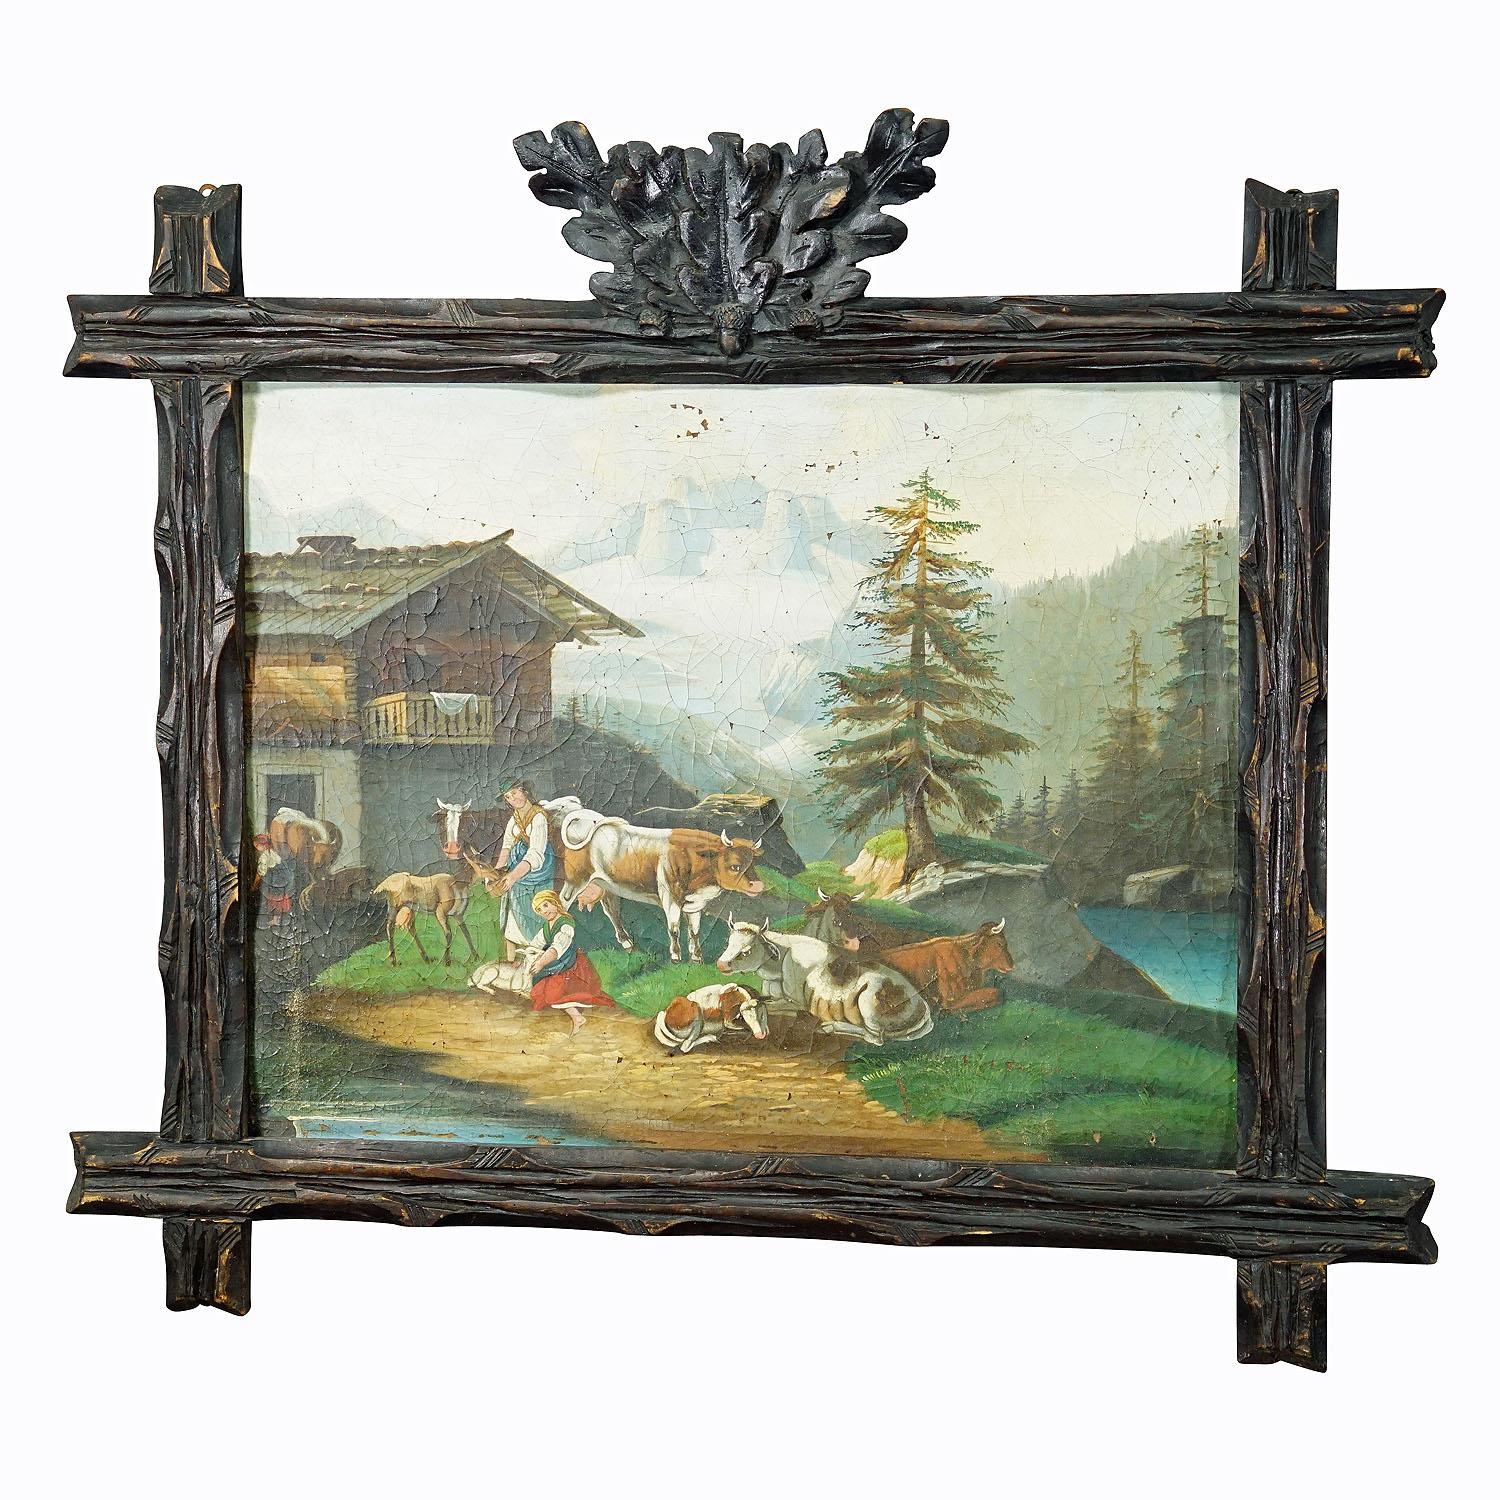 Ölgemälde, volkstümliche Landschaft mit Kühen, Ziegen und Bäuerinnen, ca. 1900s

Ein farbenfrohes antikes Ölgemälde, das eine bayerische Bauernfamilie mit ihren Kühen und Ziegen zeigt. Der Schauplatz befindet sich an einem Bergsee in einer alpinen